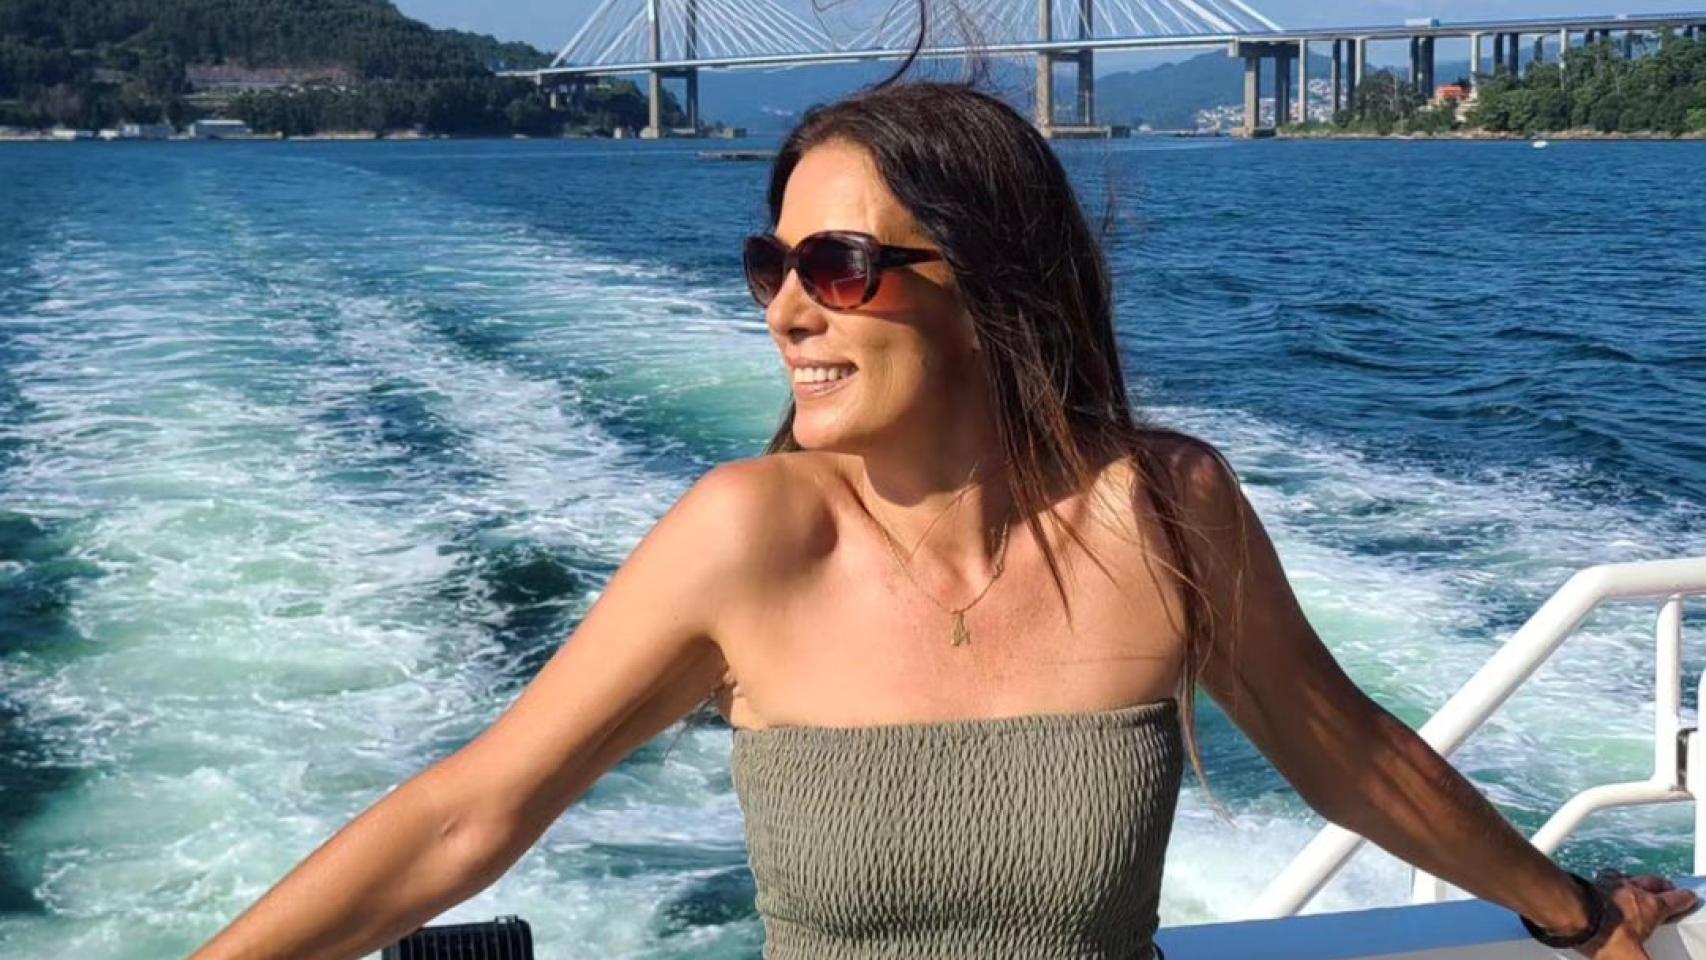 Imágenes del día: Alicia Senovilla se pone en modo verano con un paseo en barco